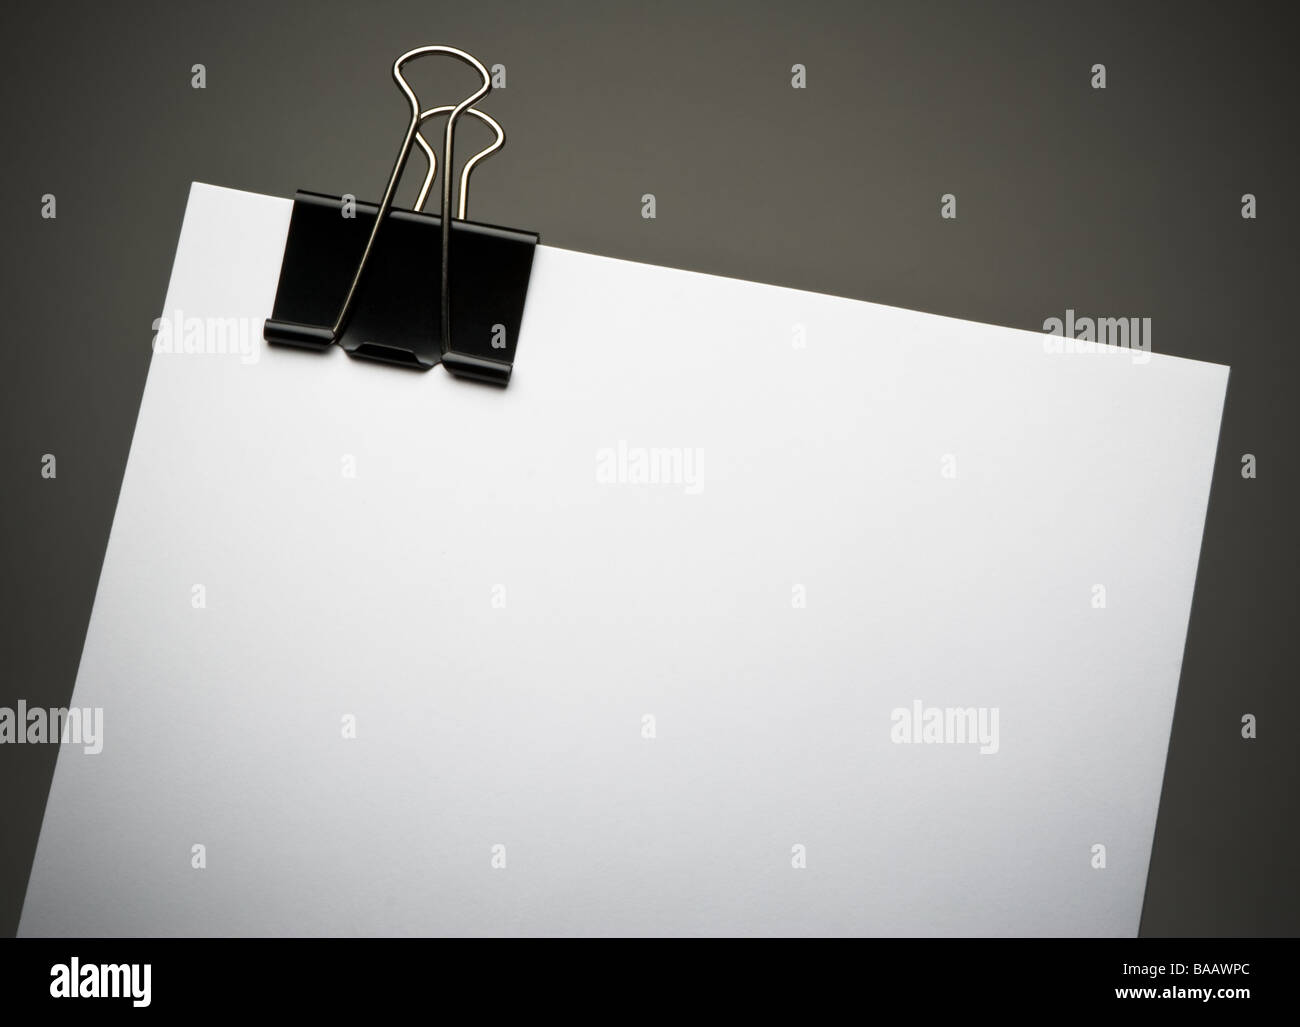 Papel blanco con negro grande clip binder en el borde superior, contra el fondo gris oscuro con sombra, Vignette composición horizontal Foto de stock